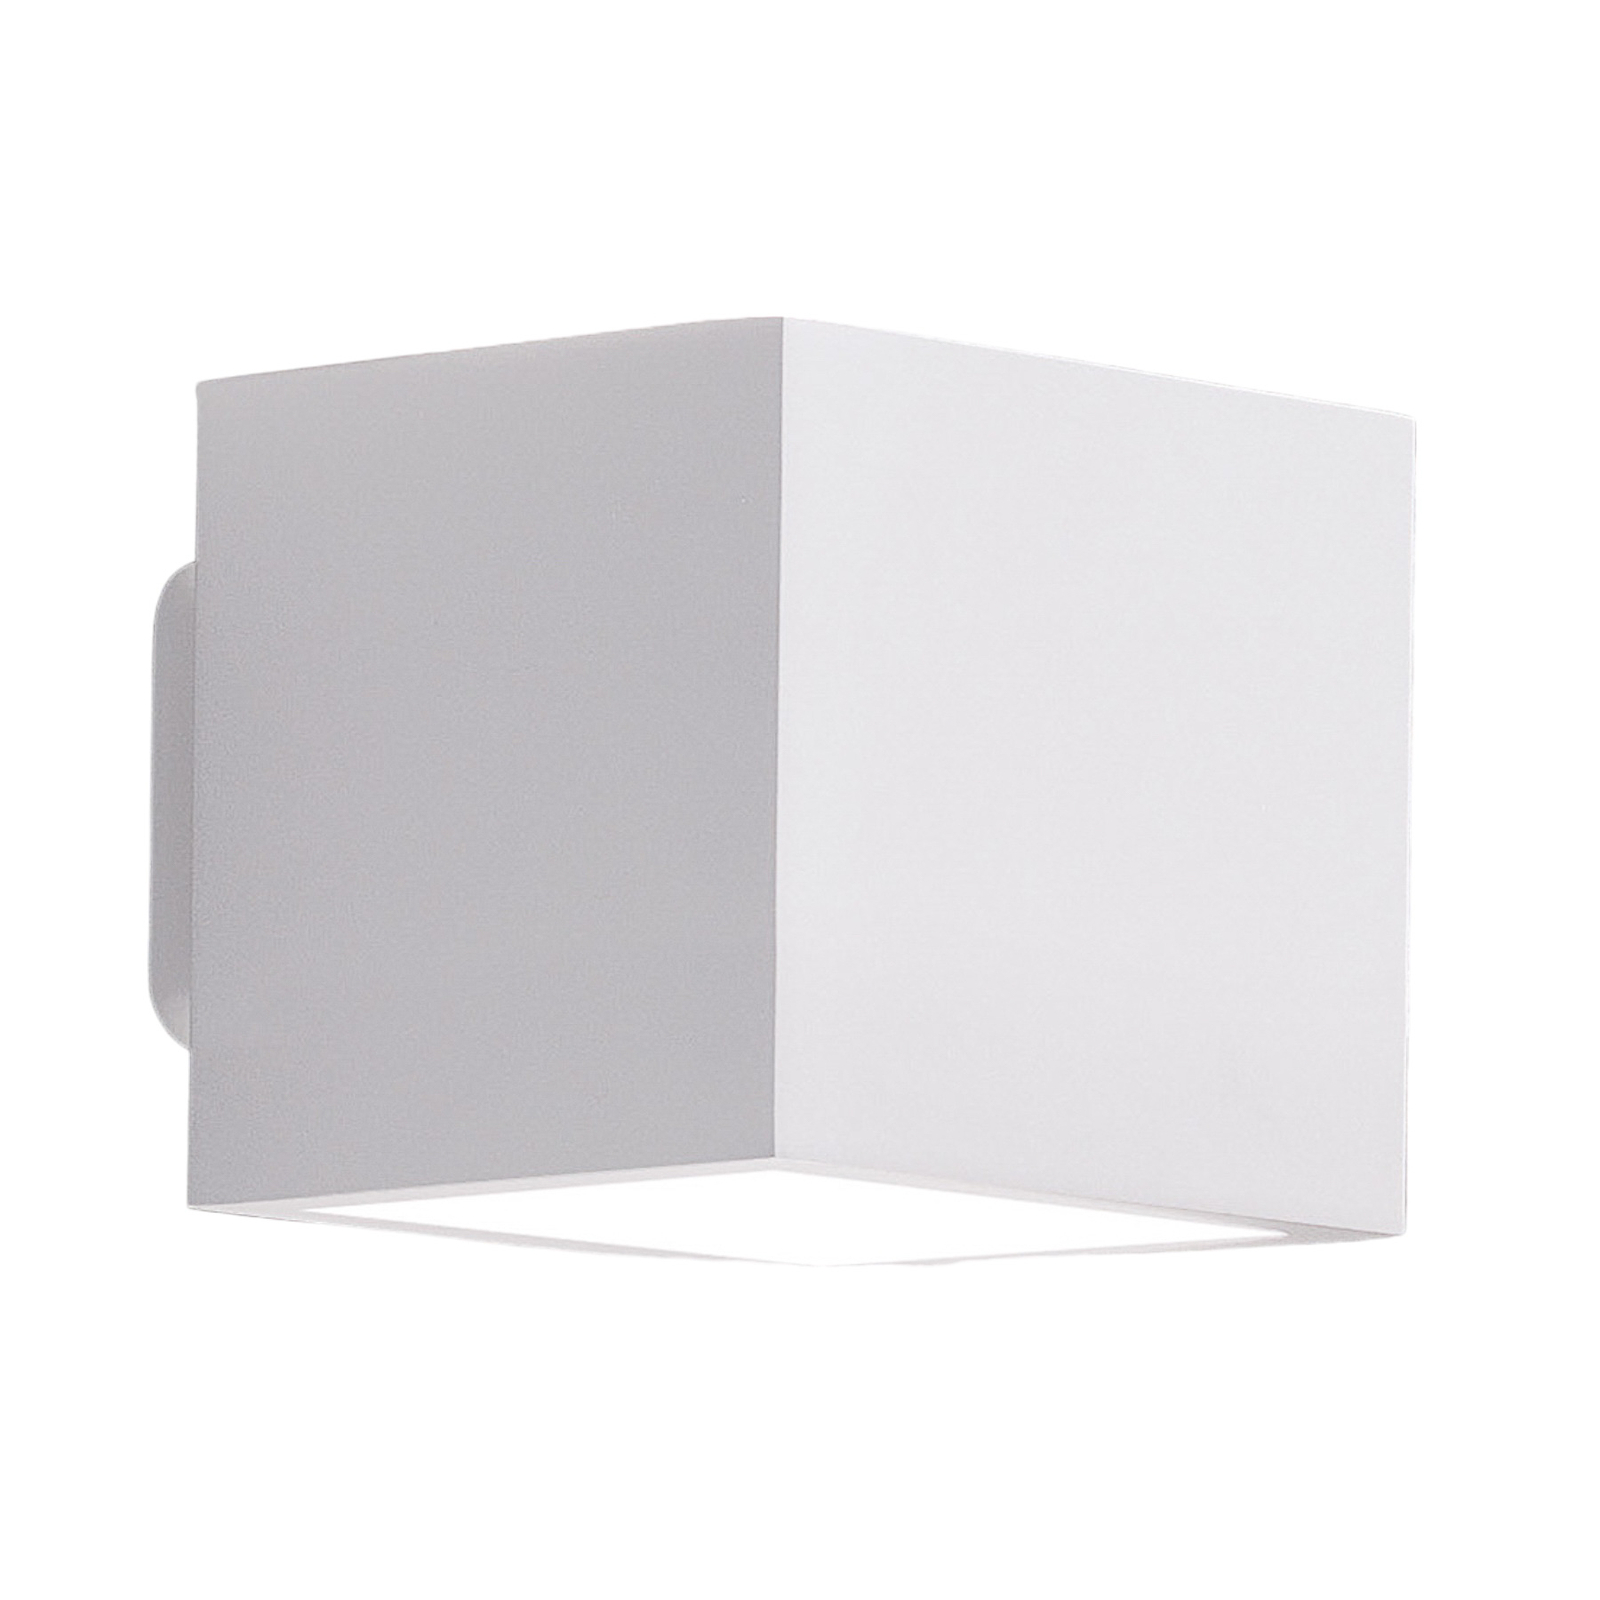 ICONE Cubò LED стенна лампа, 10 W, бяла